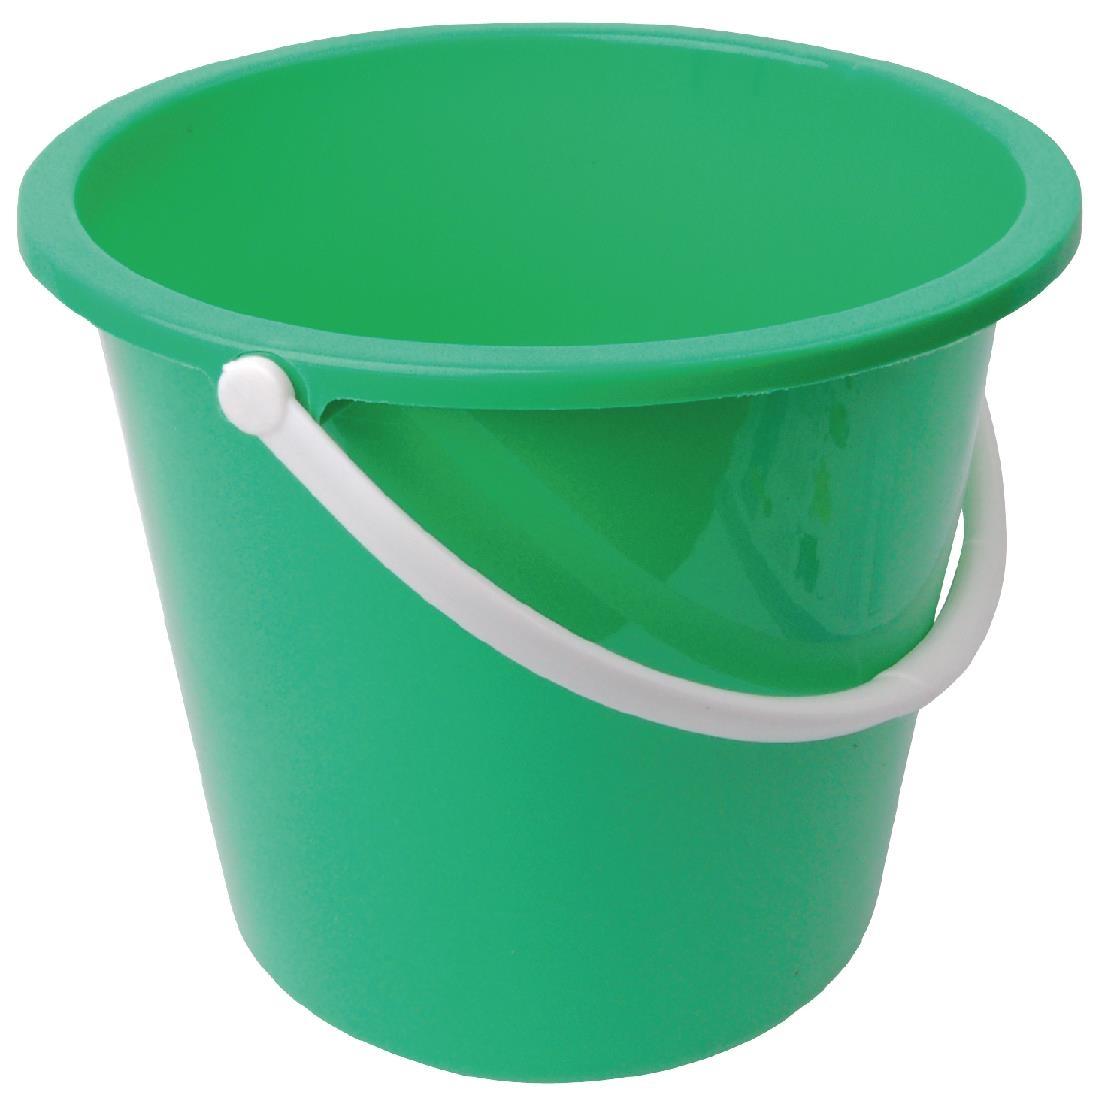 Jantex Round Plastic Bucket Green 10Ltr - CD806  - 1